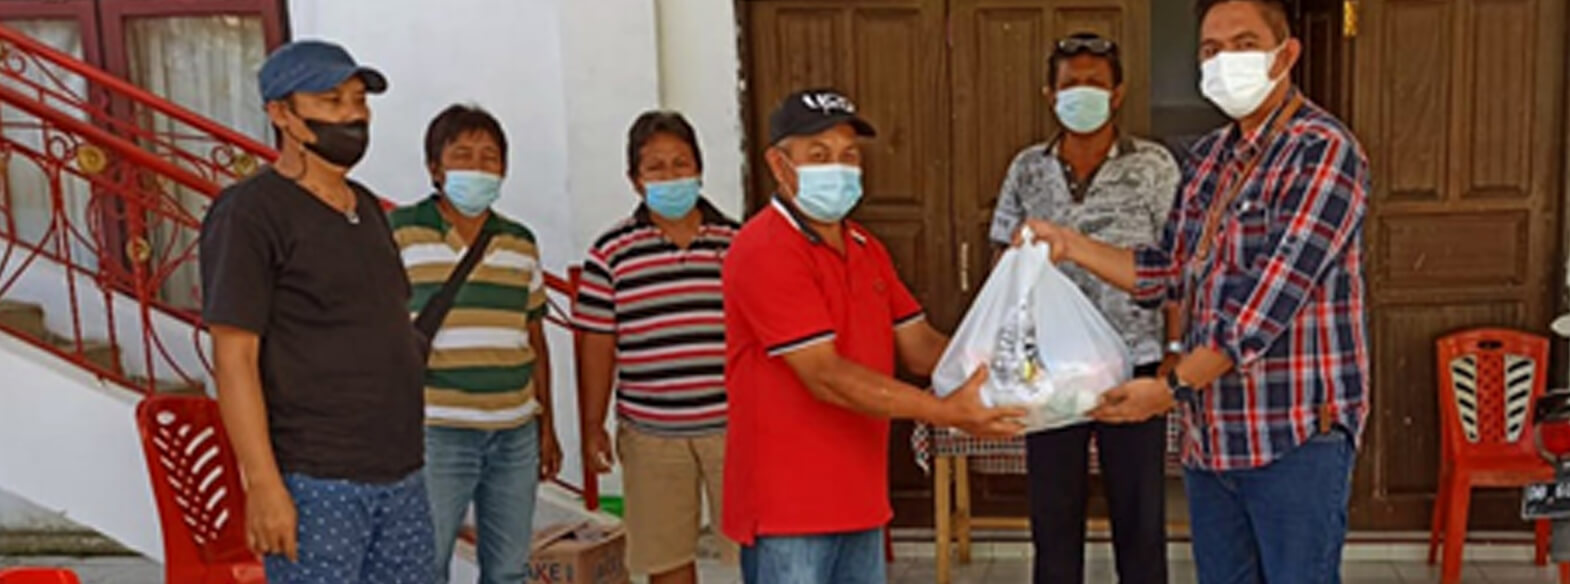 Donasi Sembako untuk Masyarakat Terdampak Pandemi Covid-19